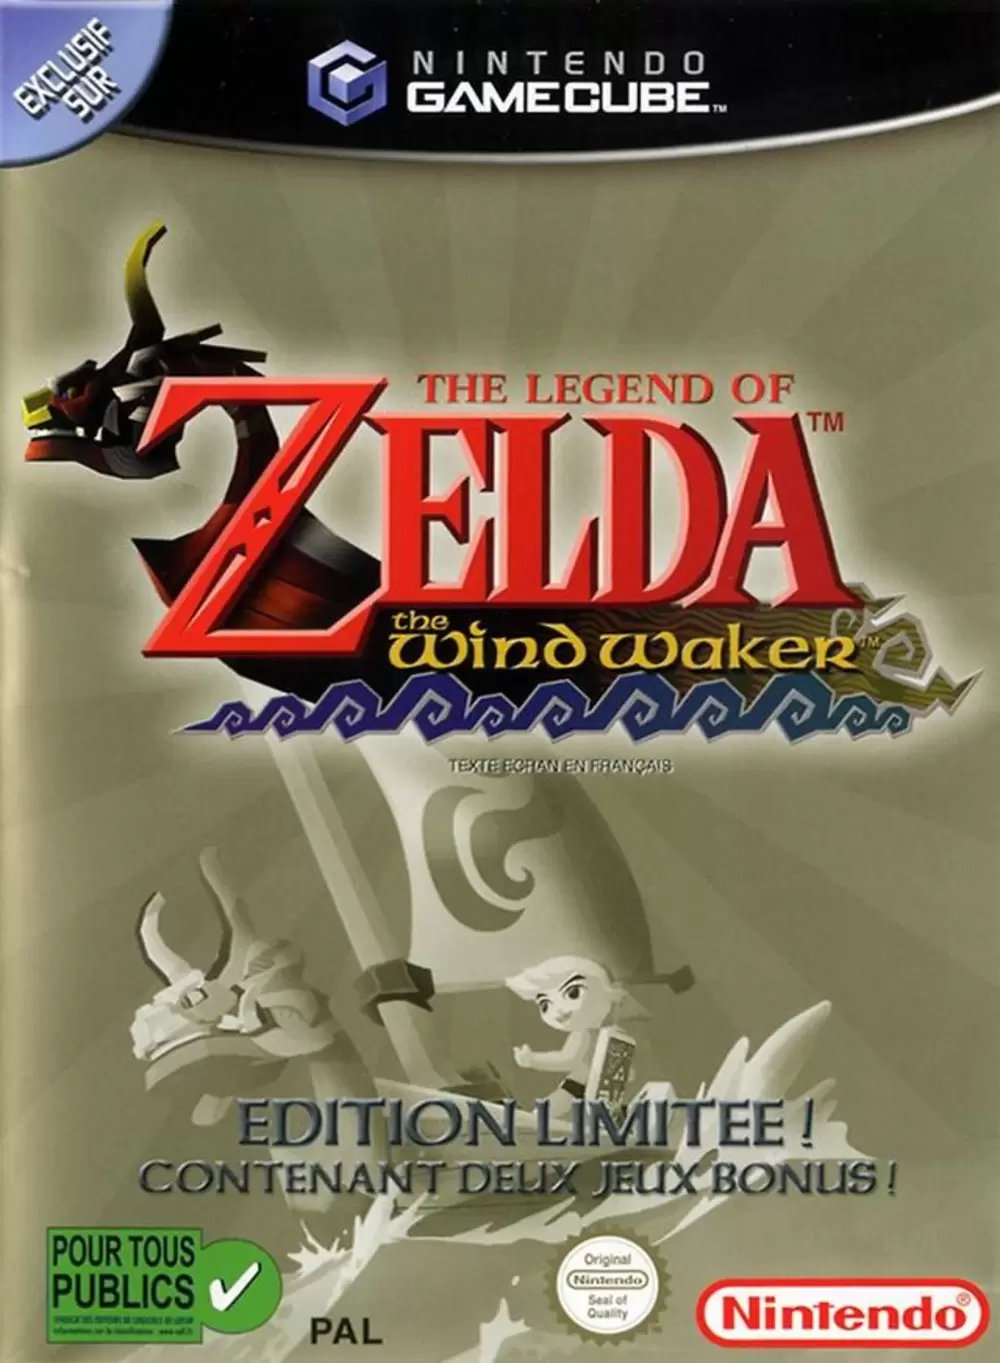 Nintendo GameCube - The Legend of Zelda